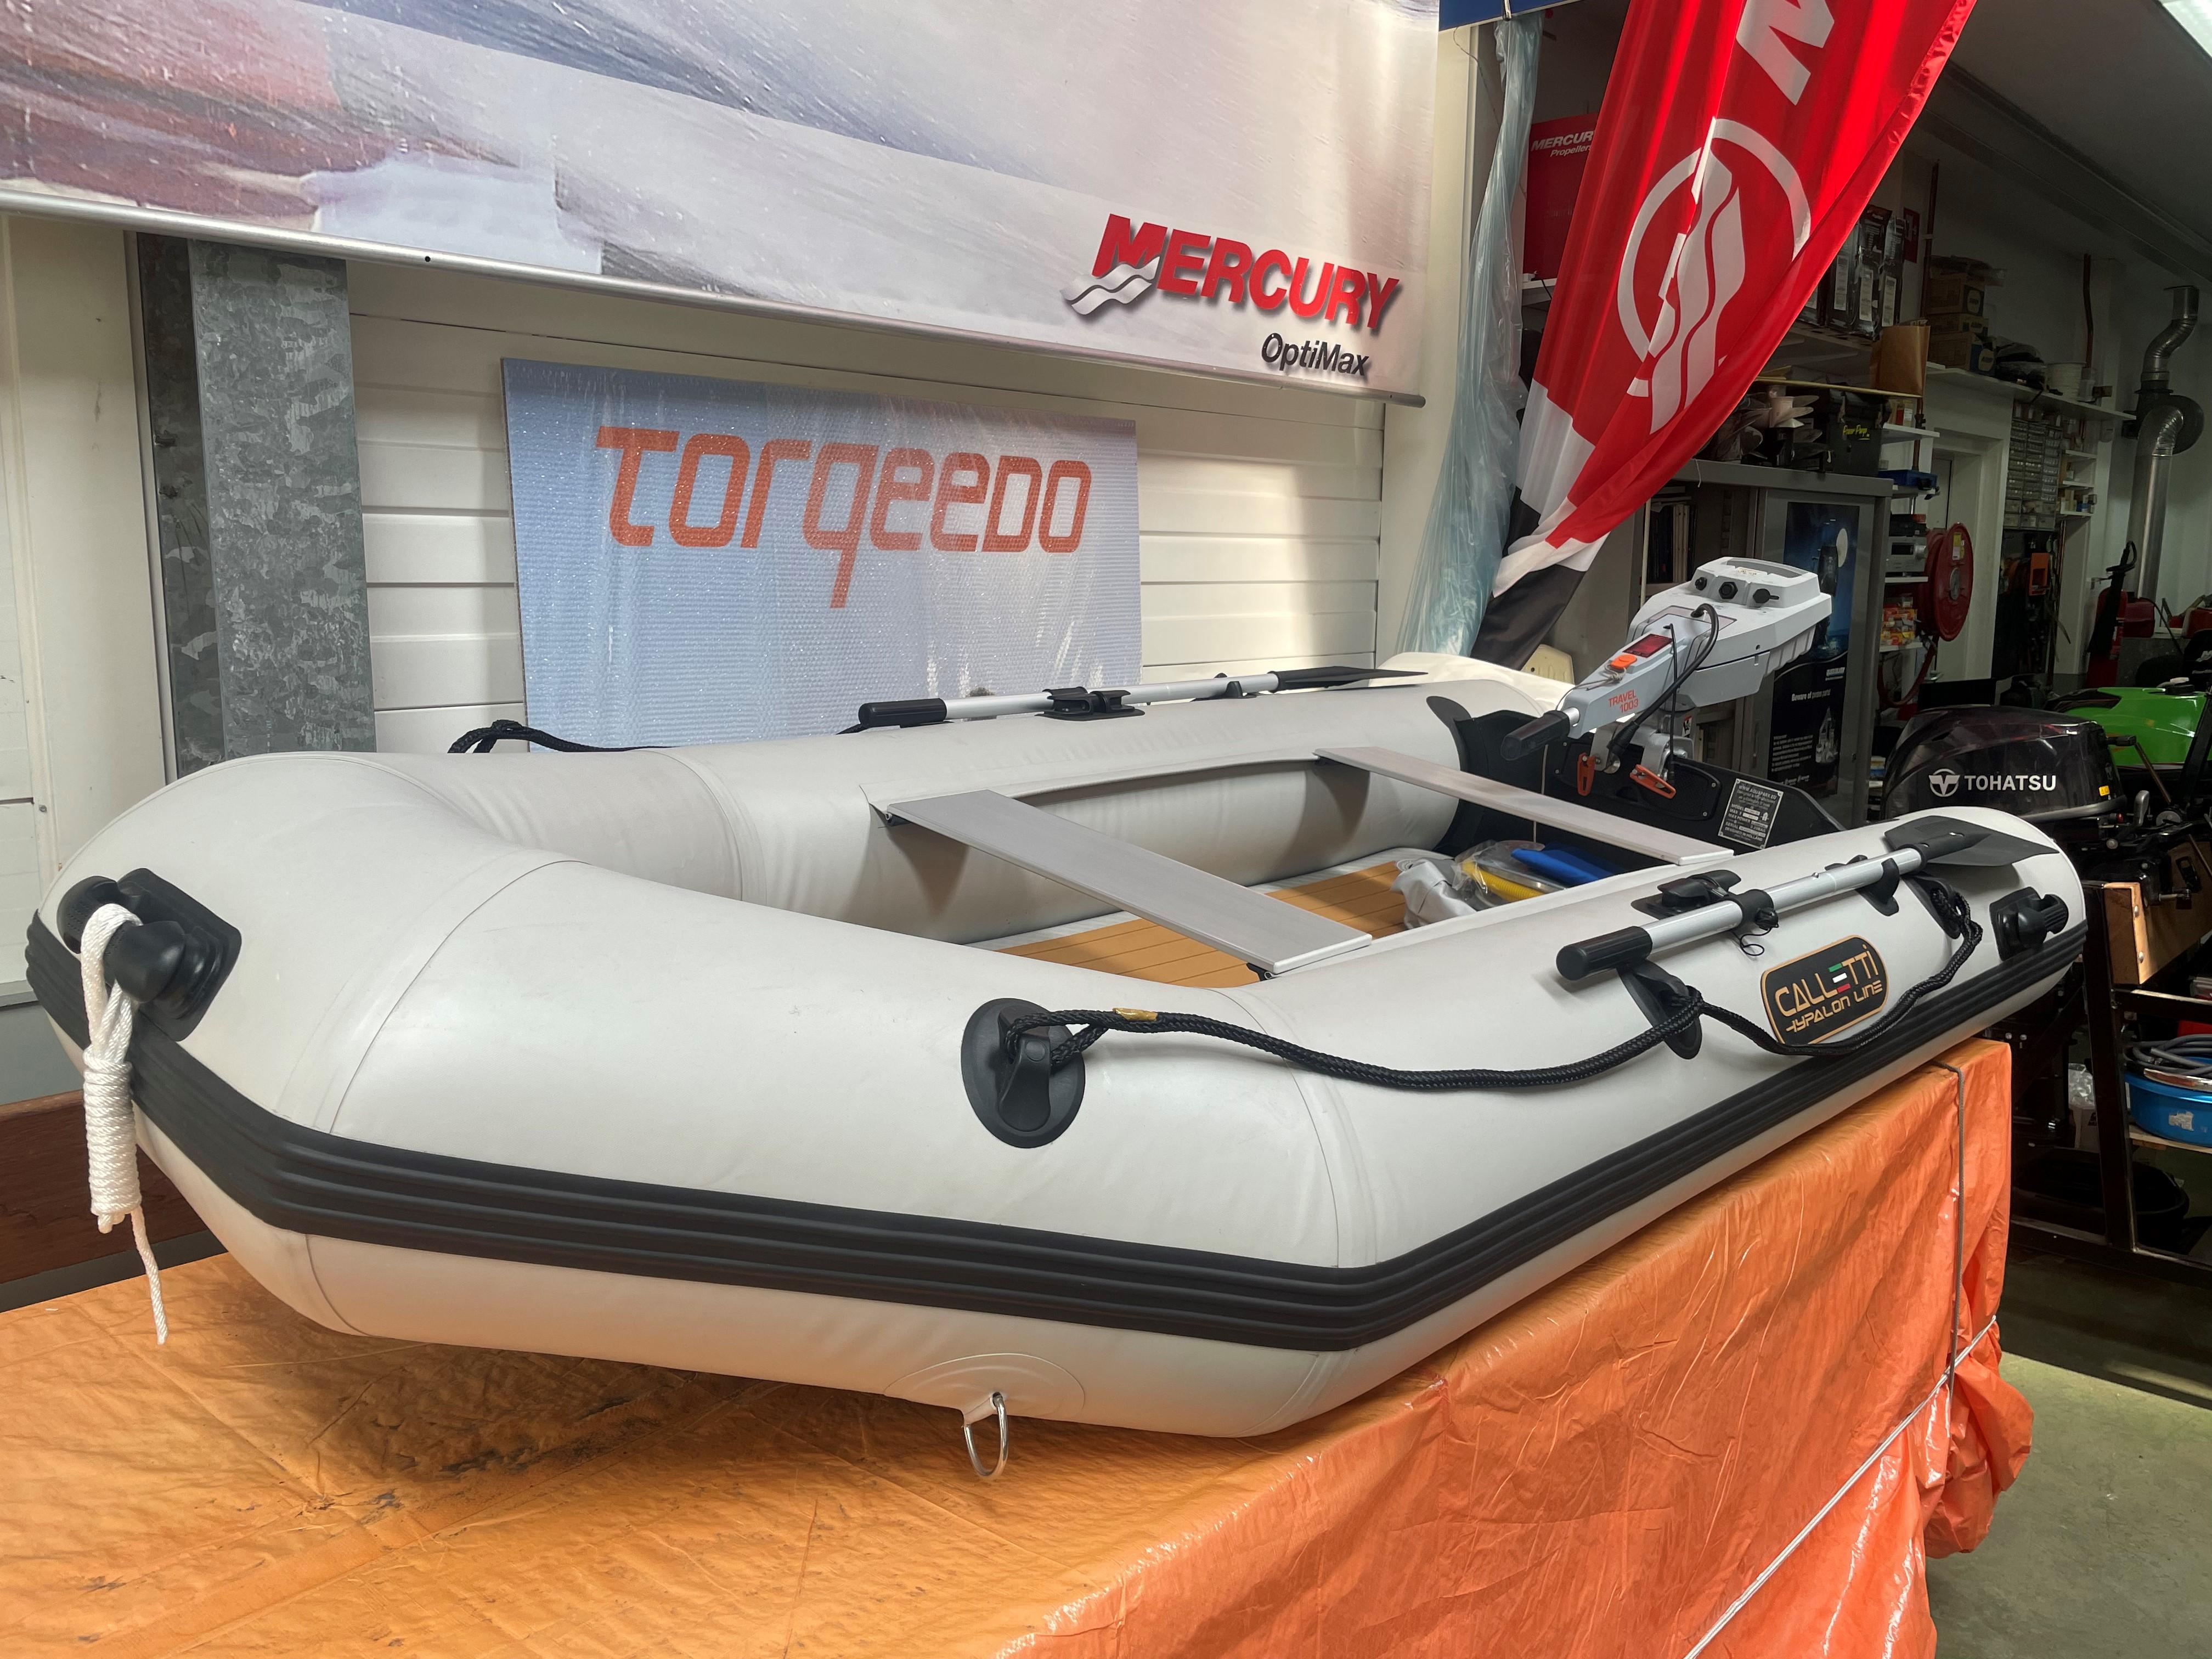 redden Ambtenaren Parelachtig Nieuw 2022 AQUAPARX rubberboot met tohatsu 6pk Diemen, Nederland 1,950 € |  Botentekoop